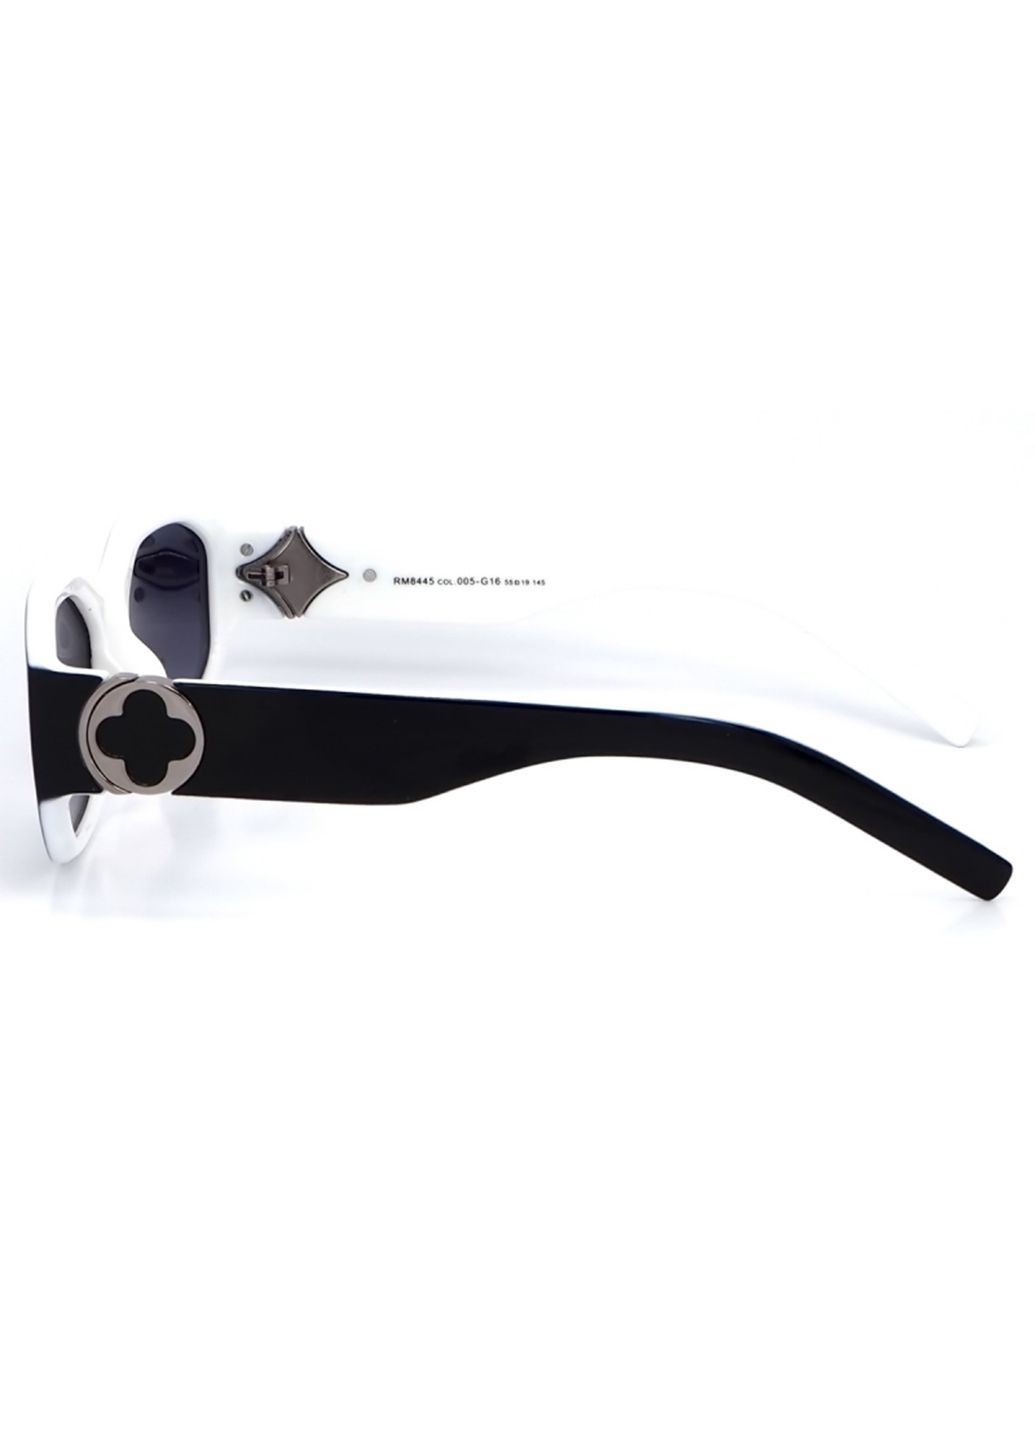 Купить Женские солнцезащитные очки Roberto с поляризацией RM8445 113024 в интернет-магазине